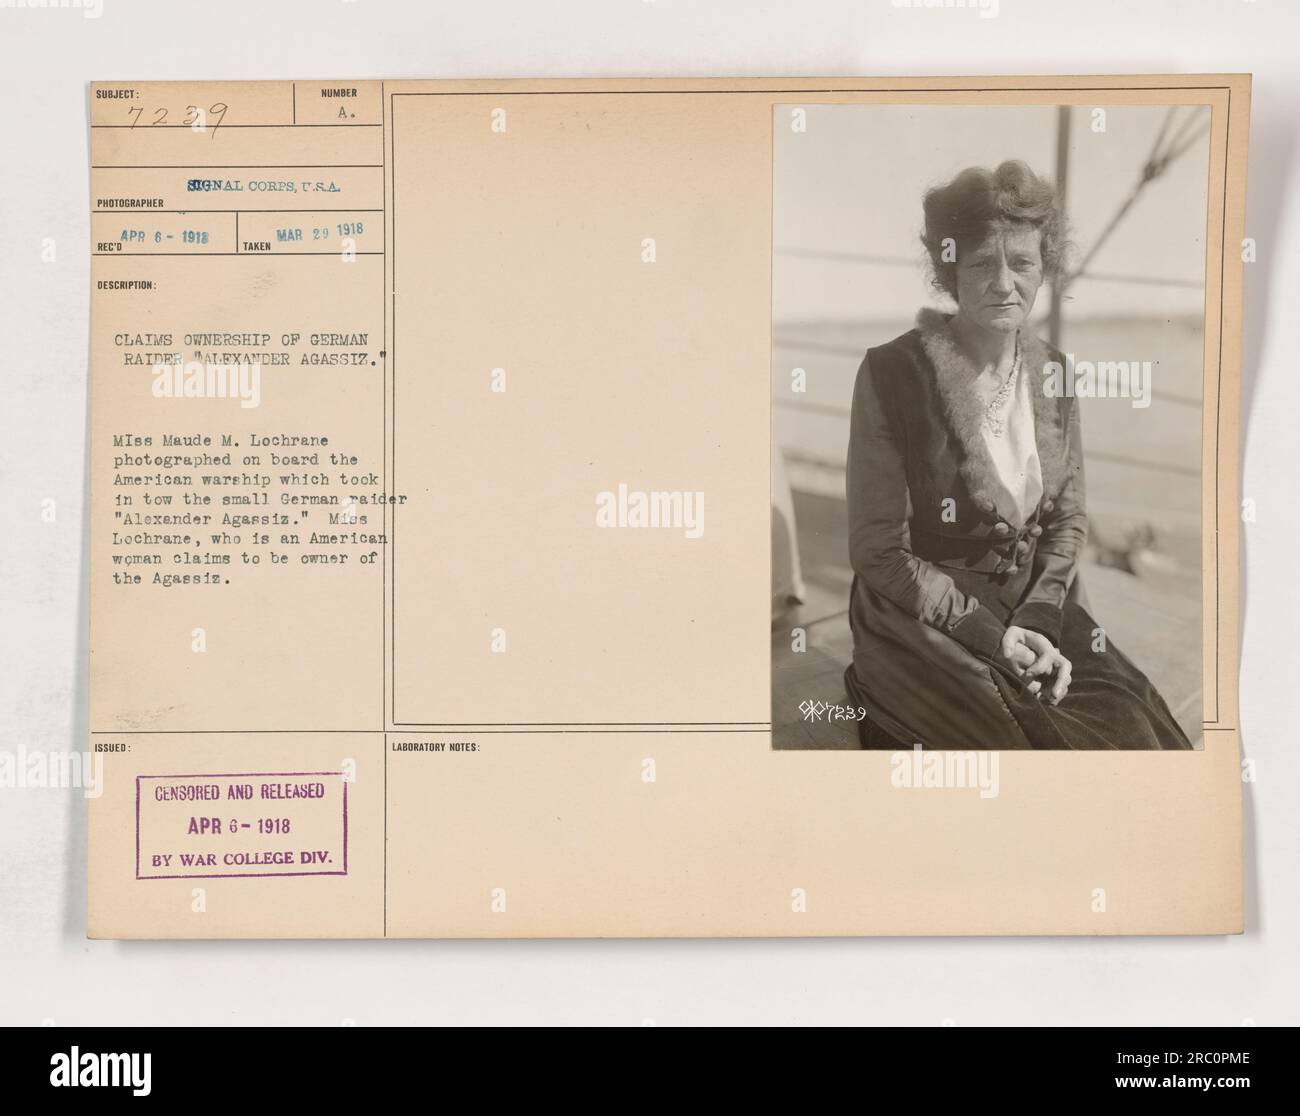 Das Foto zeigt Miss Maude M. Lochrane an Bord eines amerikanischen Kriegsschiffs, das den kleinen deutschen Raider Alexander Agassiz schleppte. Miss Lochrane, eine Amerikanerin, behauptet, die Agassiz zu besitzen. Das Foto wurde zensiert und am 6. April 1918 vom war College Division Laboratory veröffentlicht. Der Fotograf ist ein Hindernis für das A. Signal Corps. Stockfoto